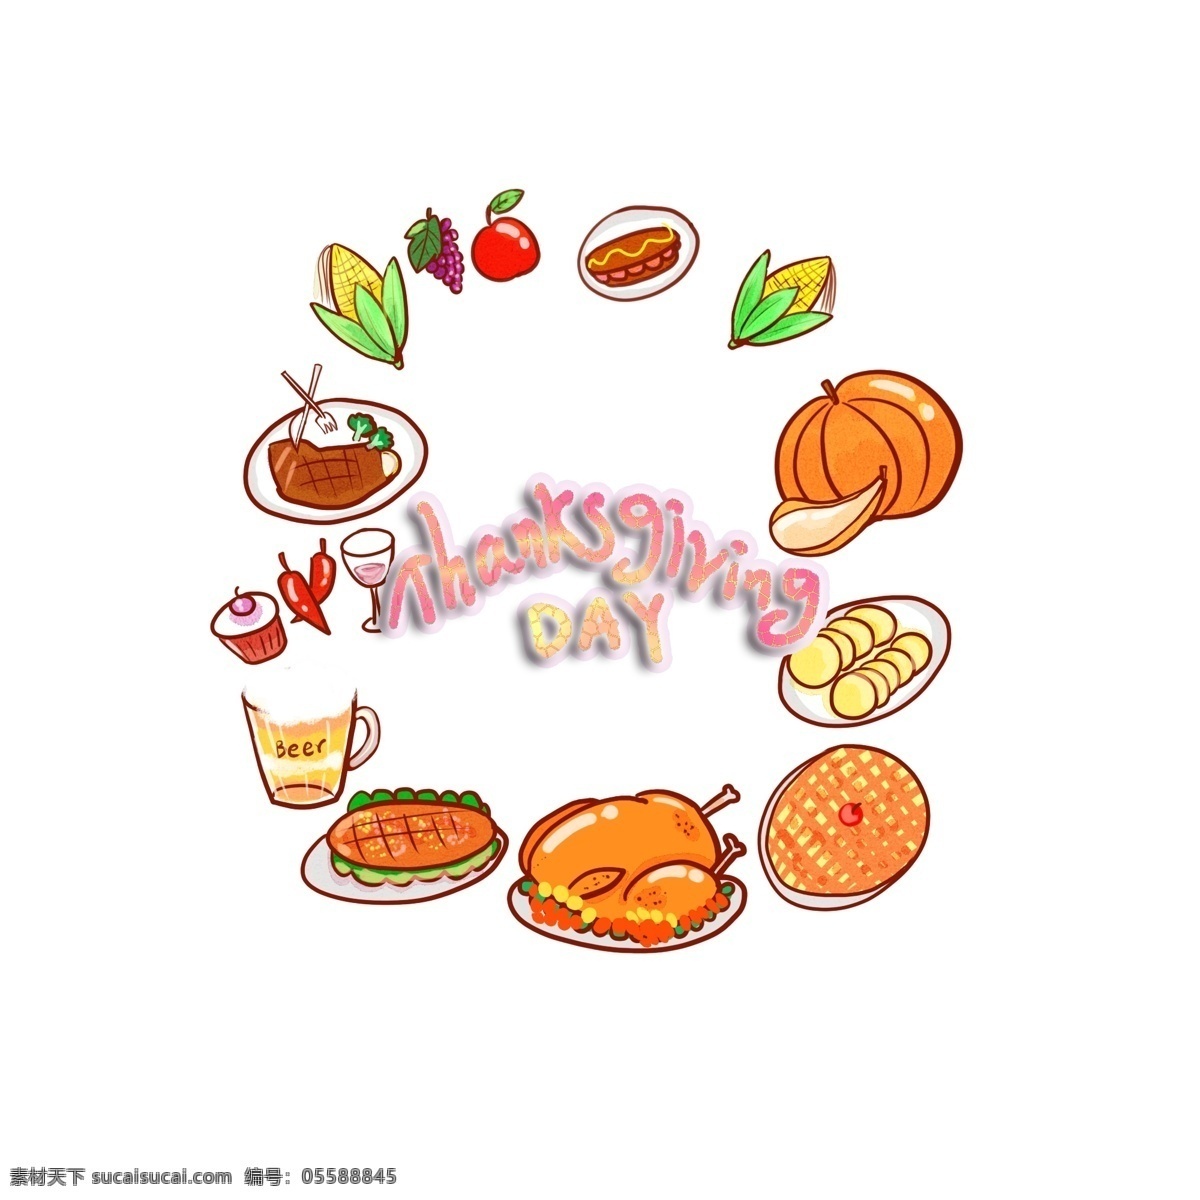 感恩节 食物 装饰 图案 thanksgivingday 火鸡 葡萄 美食 南瓜 啤酒 派 辣椒 水果 手绘 卡通